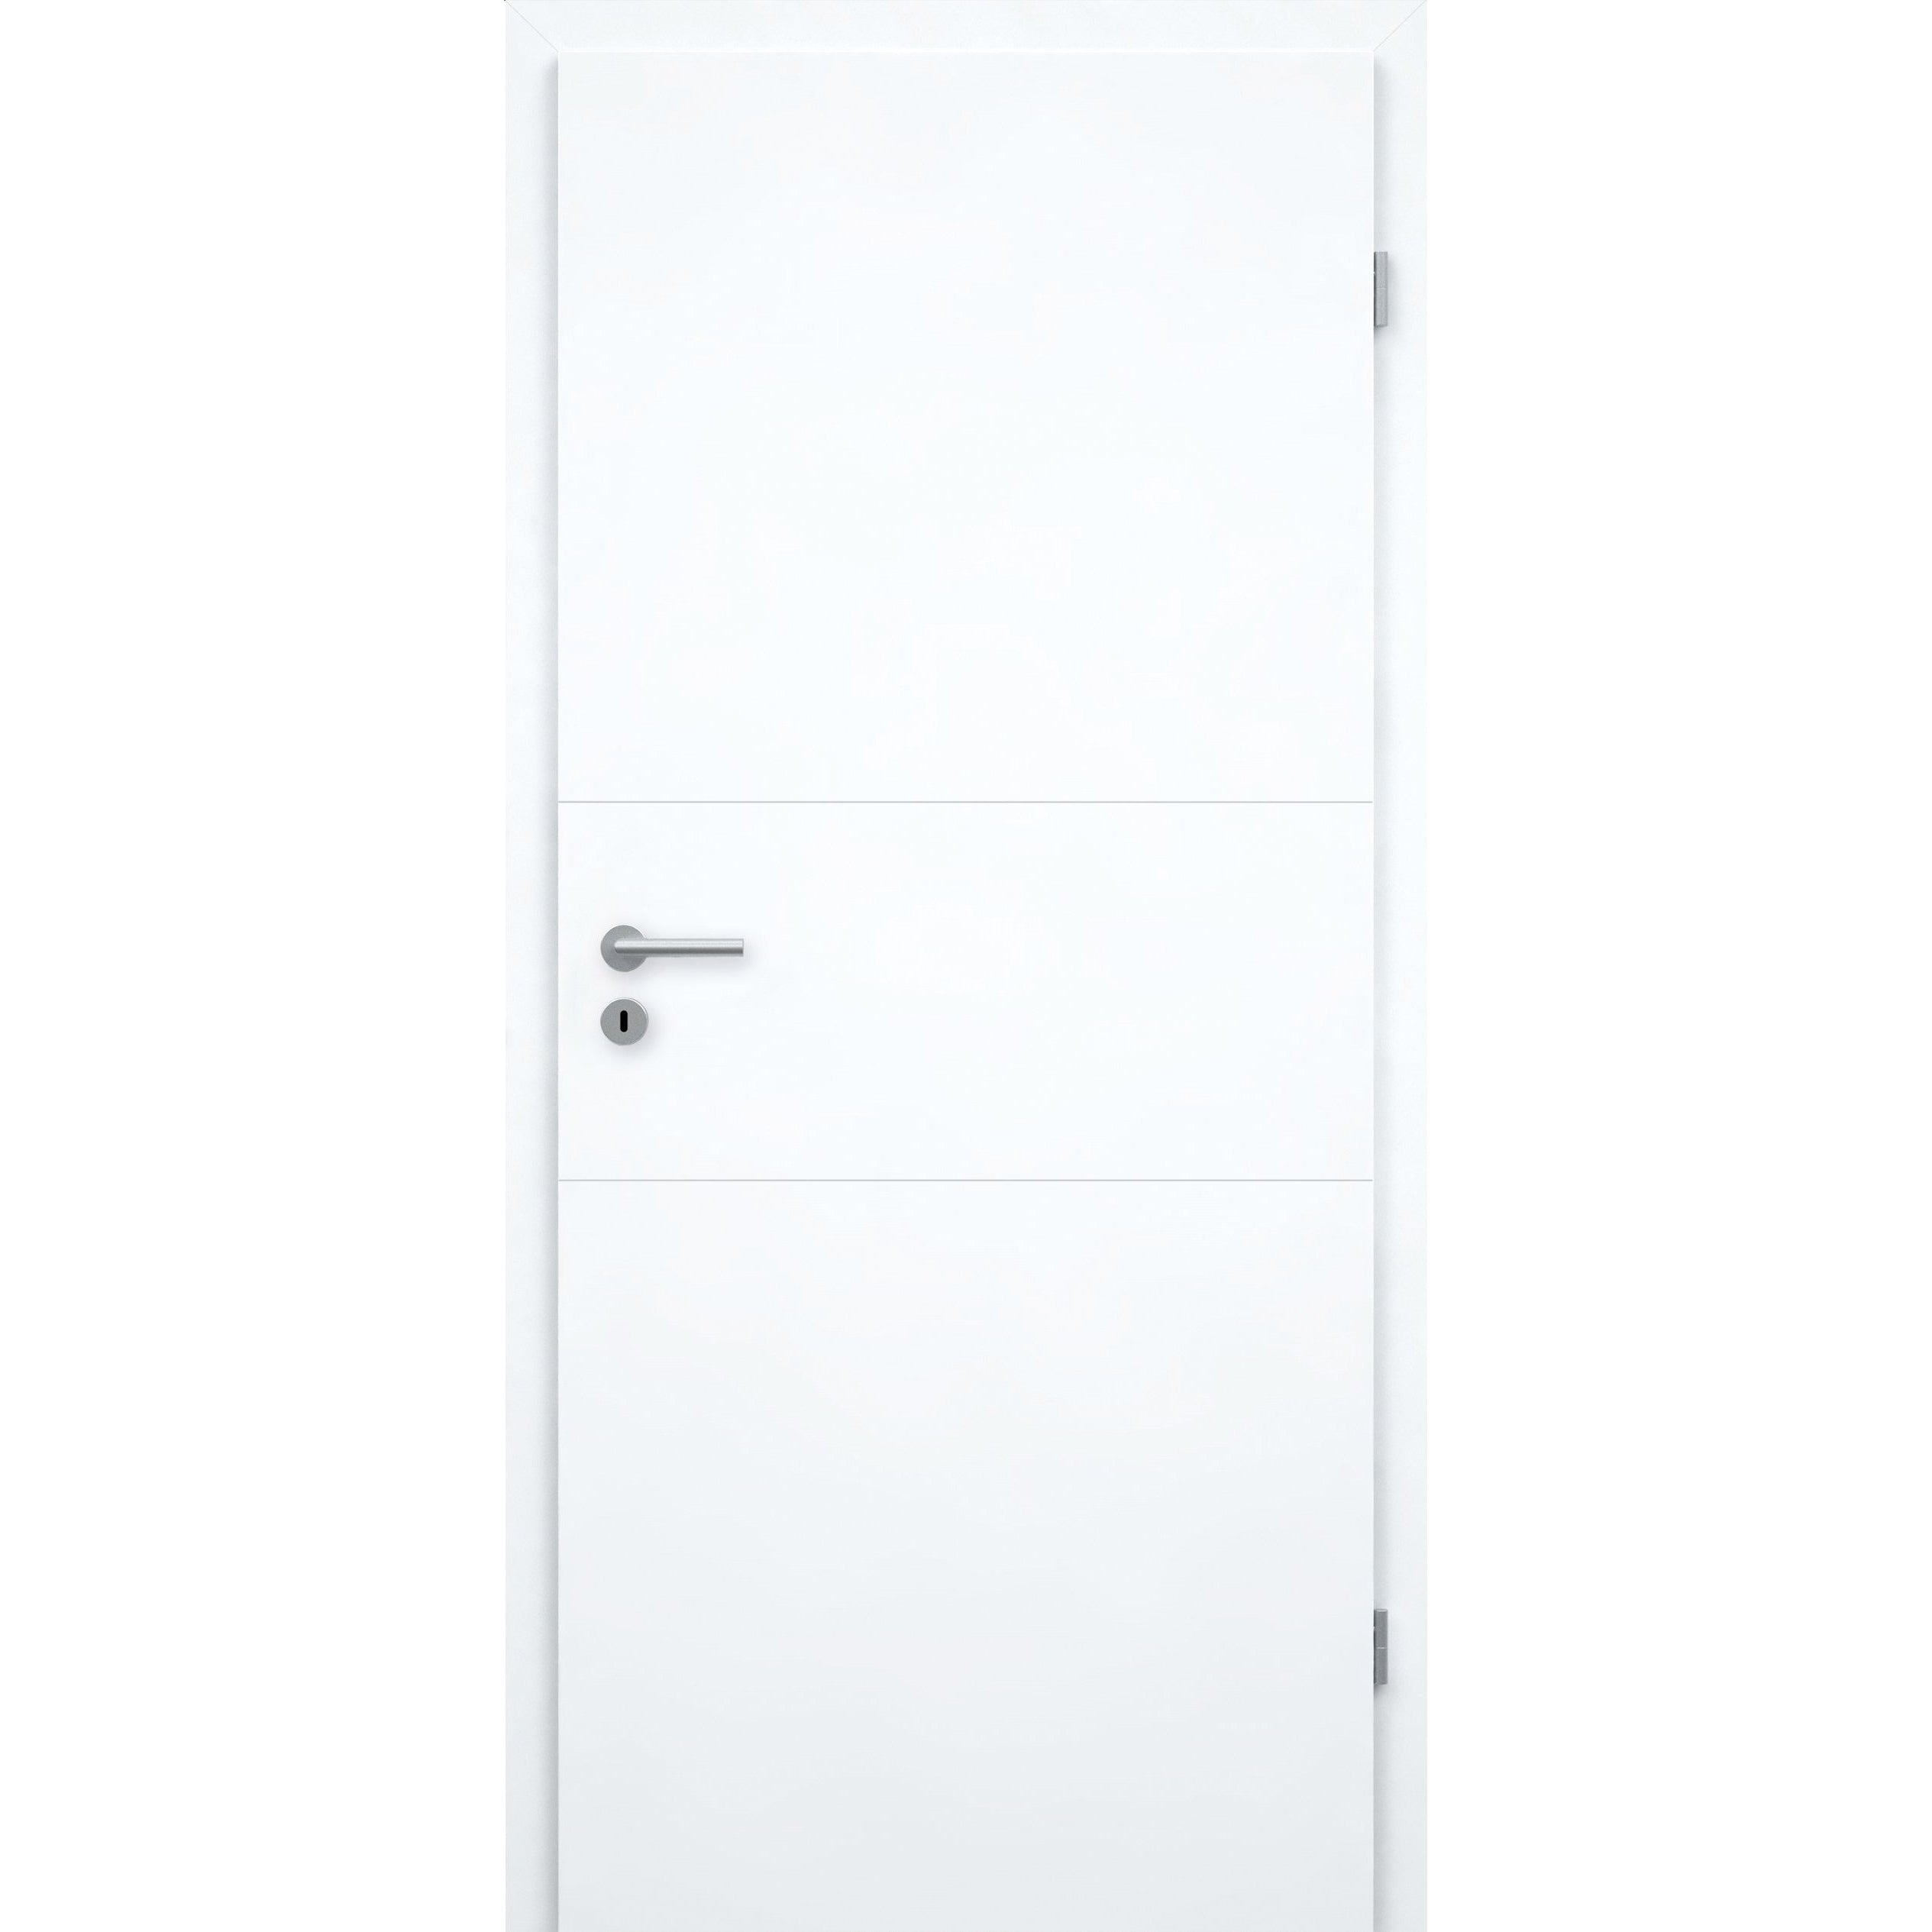 Wohnungseingangstür brillant-weiß 2 Rillen quer Designkante SK1 / KK3 - Modell Designtür Q23